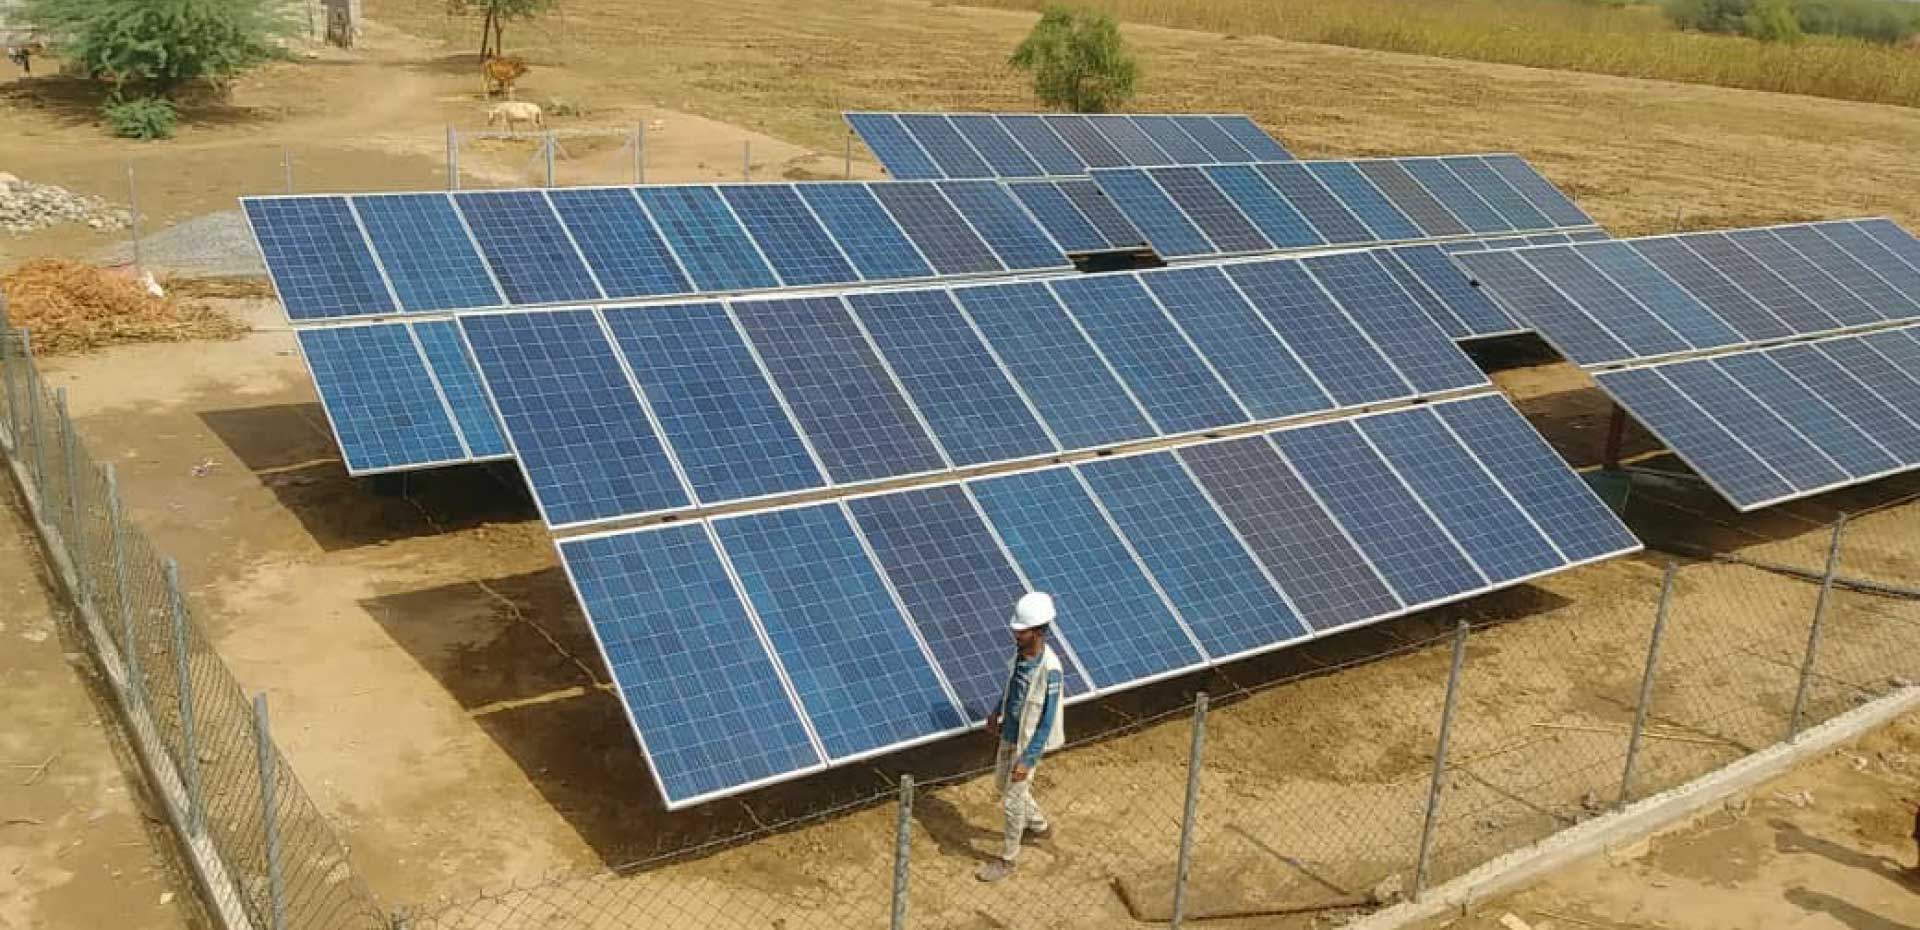 تركيب وحدة ضخ كاملة تعمل بنظام الطاقة الشمسية في مدينة الحديدة بمنطقة باجل.